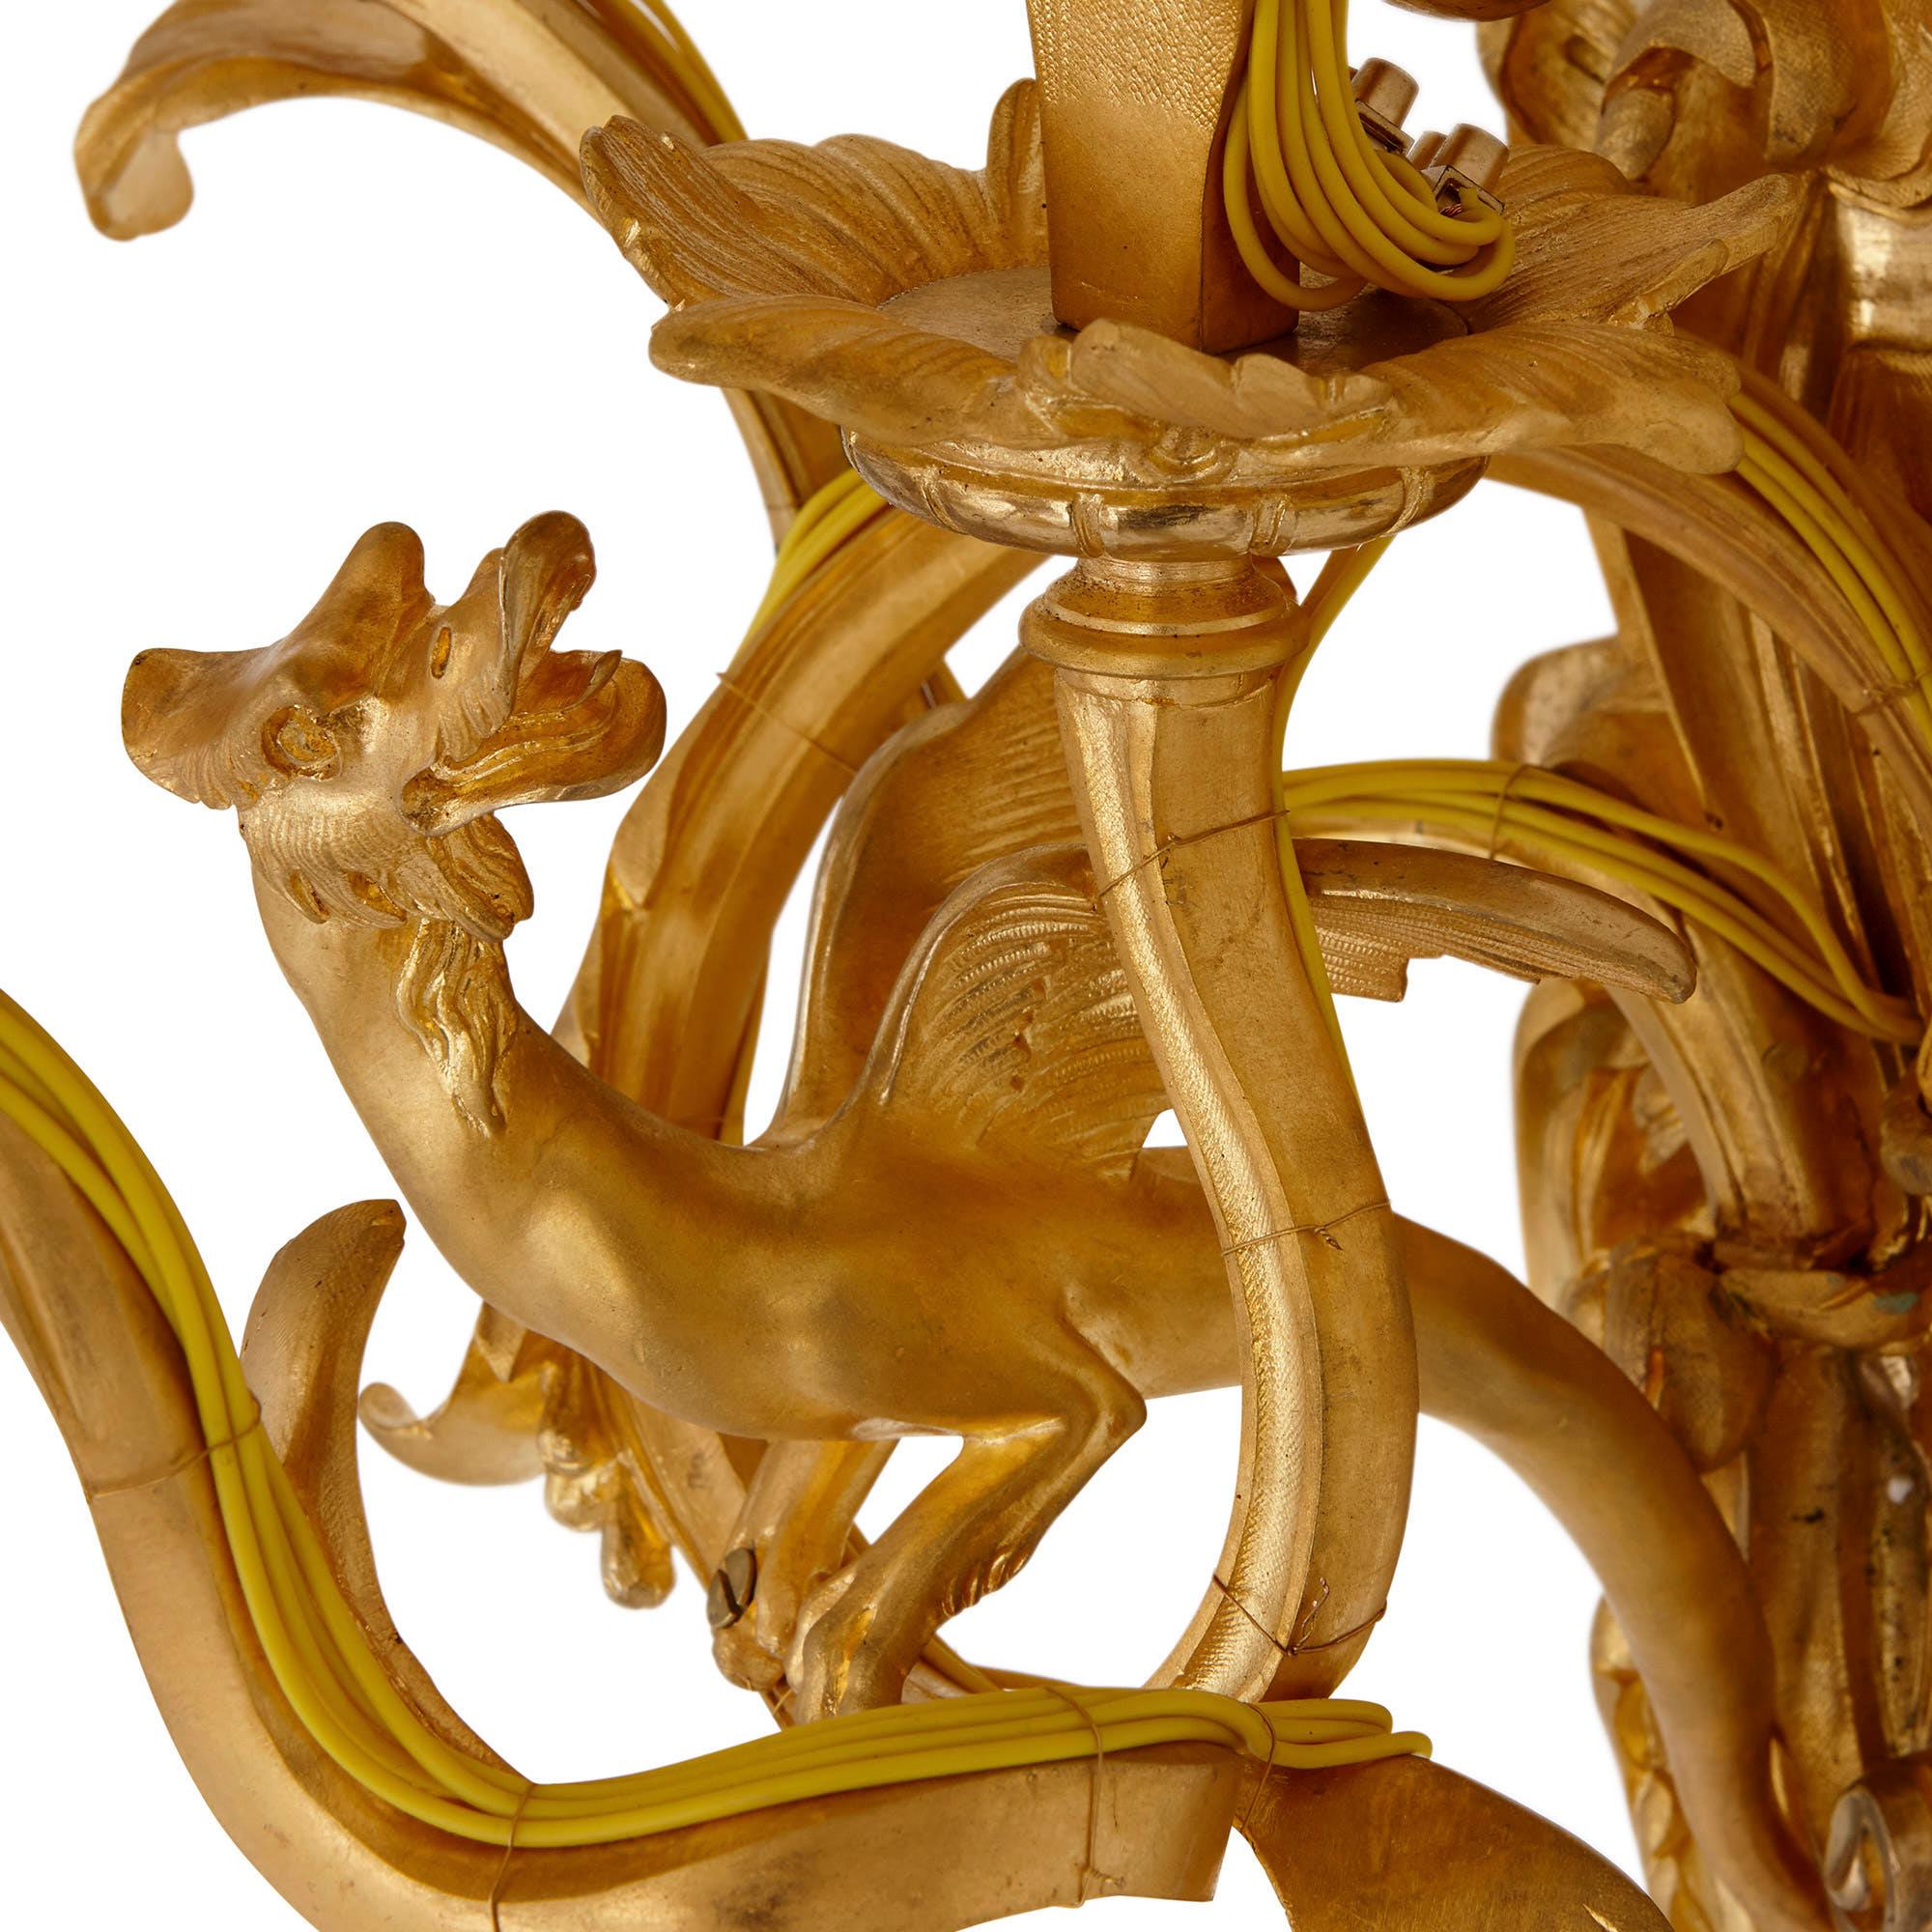 Diese Wandleuchter aus vergoldeter Bronze (Ormolu) sind kunstvoll und sehr elegant gestaltet. Sie sind im Rokoko-Stil gehalten, nach dem Vorbild der dekorativen Kunst der Zeit Ludwigs XV. in Frankreich (1715-1774). 

Die Wandleuchter sind im